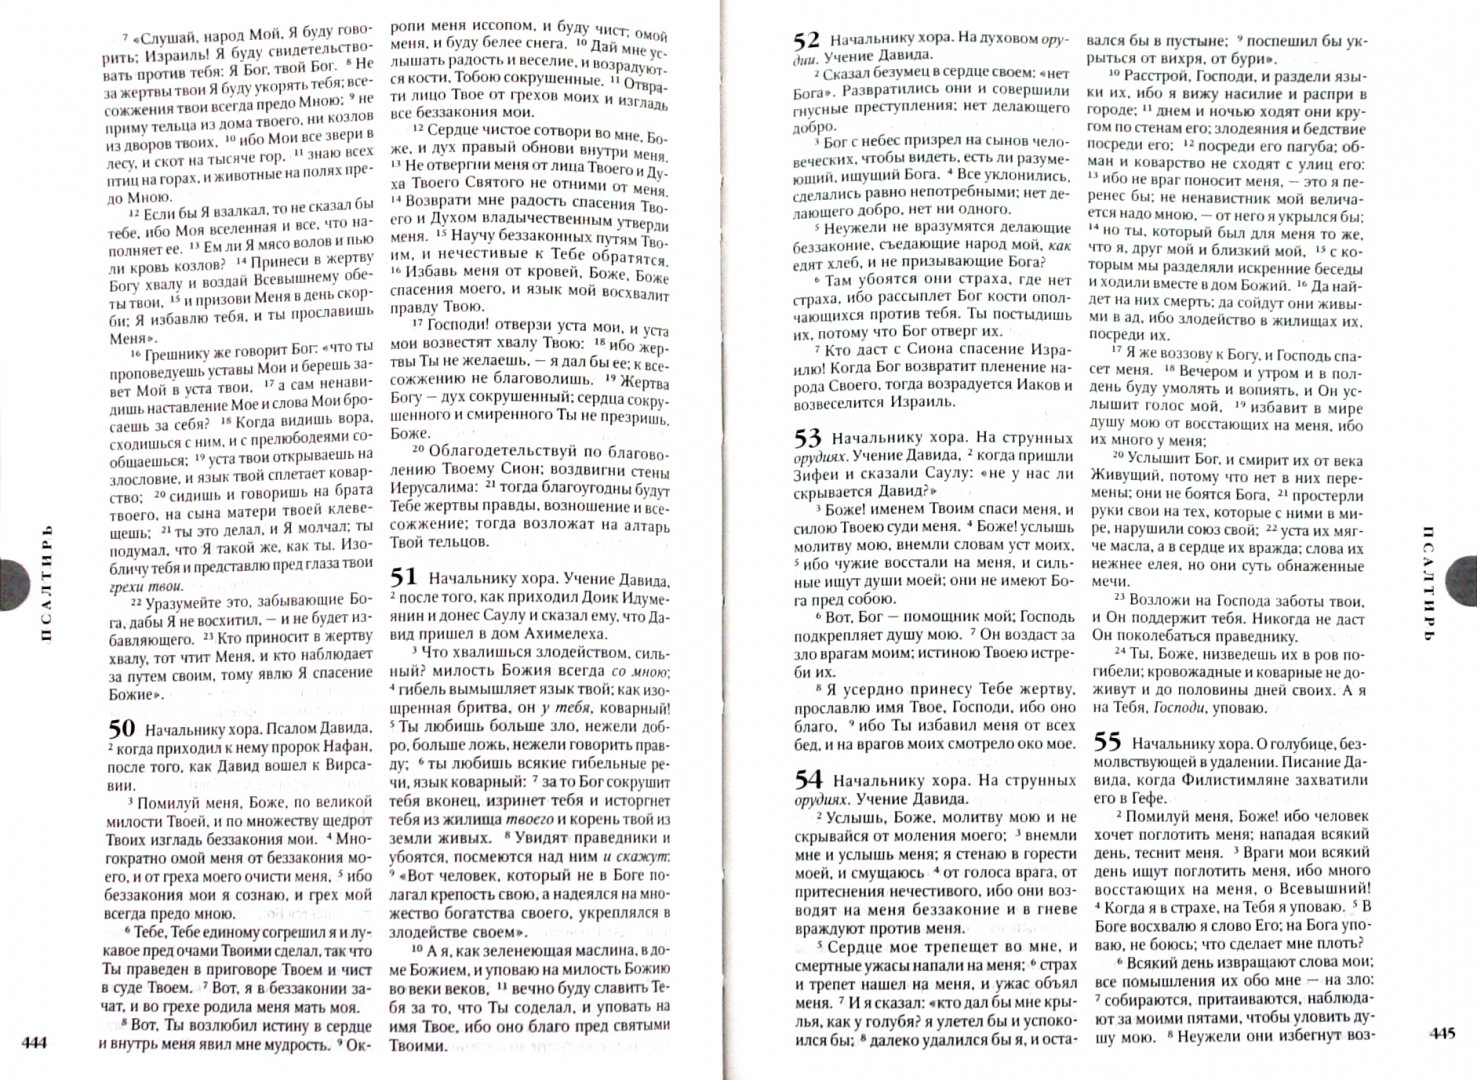 Иллюстрация 1 из 4 для Библия (1110 045 DT) | Лабиринт - книги. Источник: Лабиринт